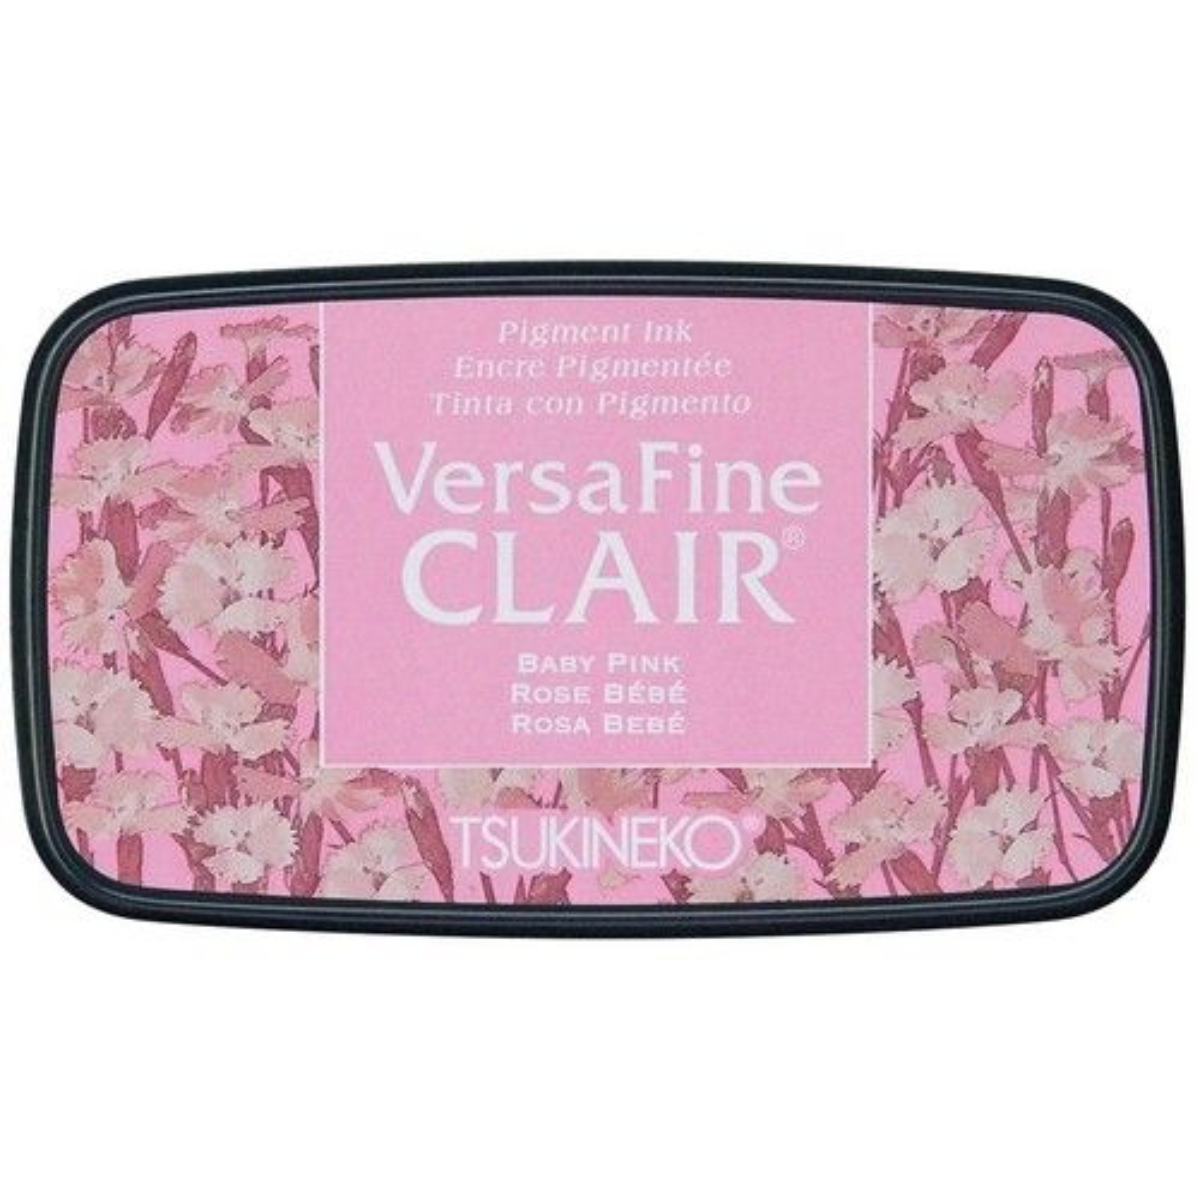 VersaFine Clair – Baby Pink